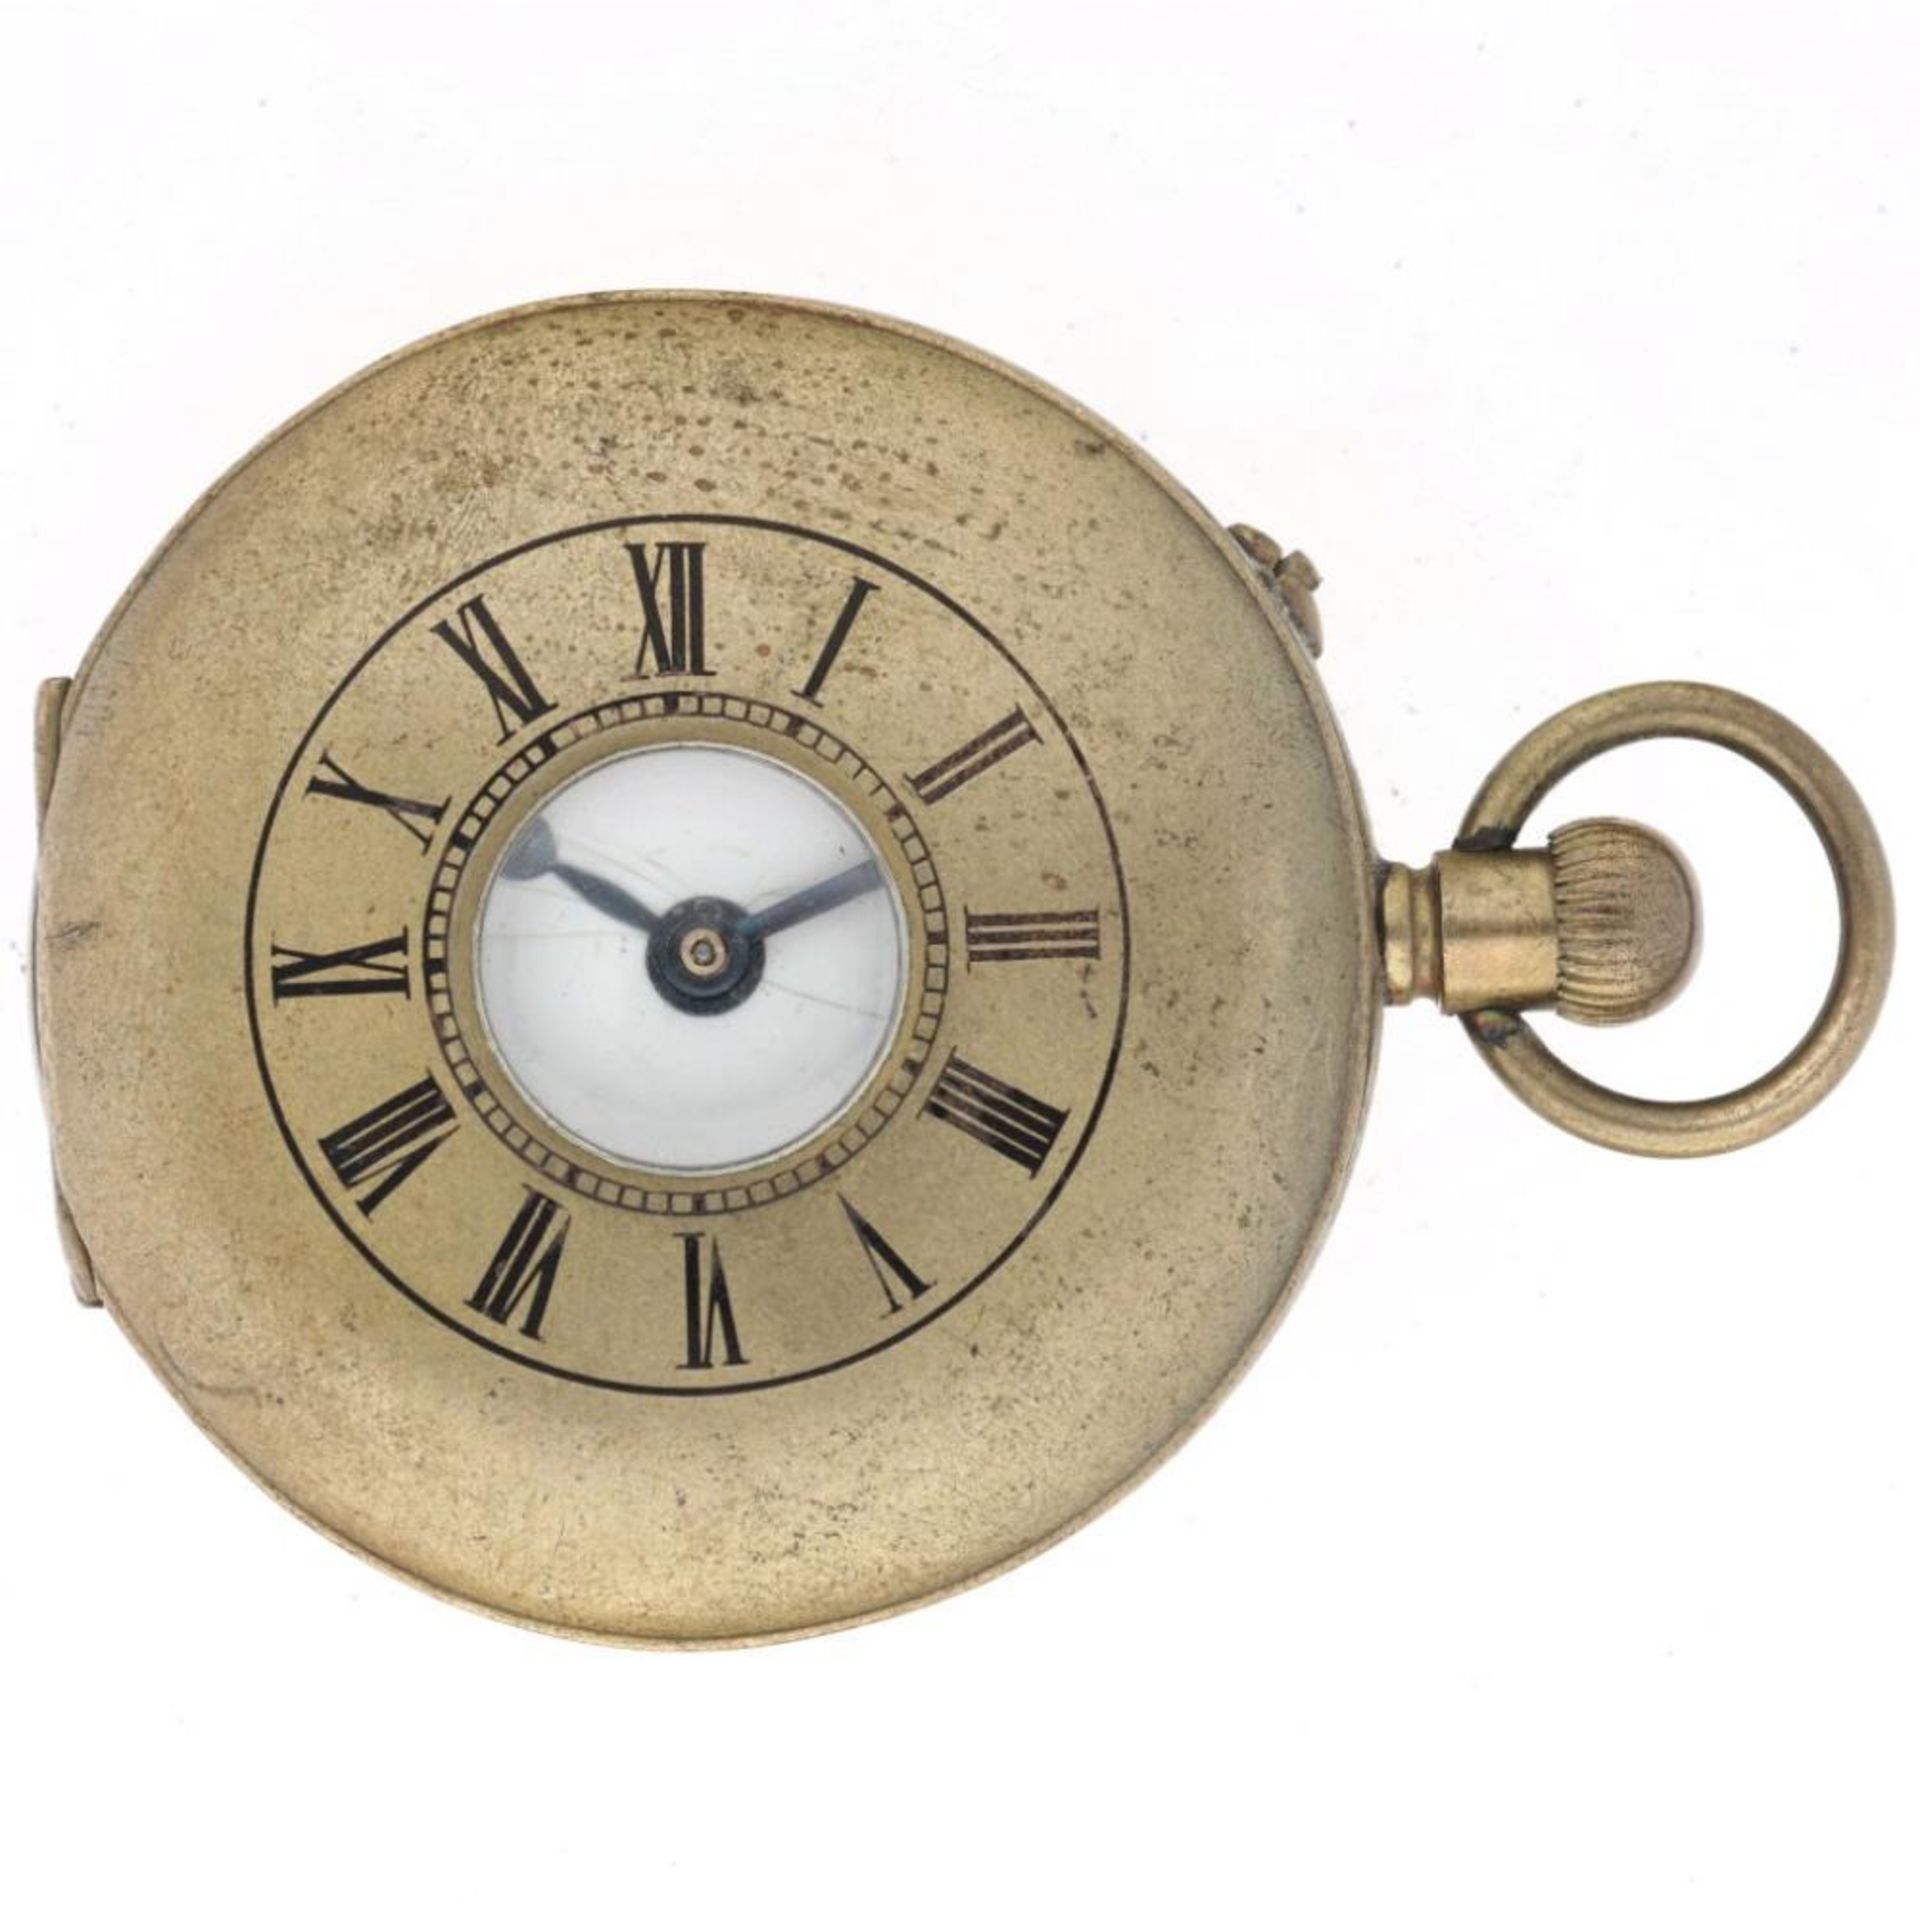 Savonette lever-escapement - Men's pocket watch.